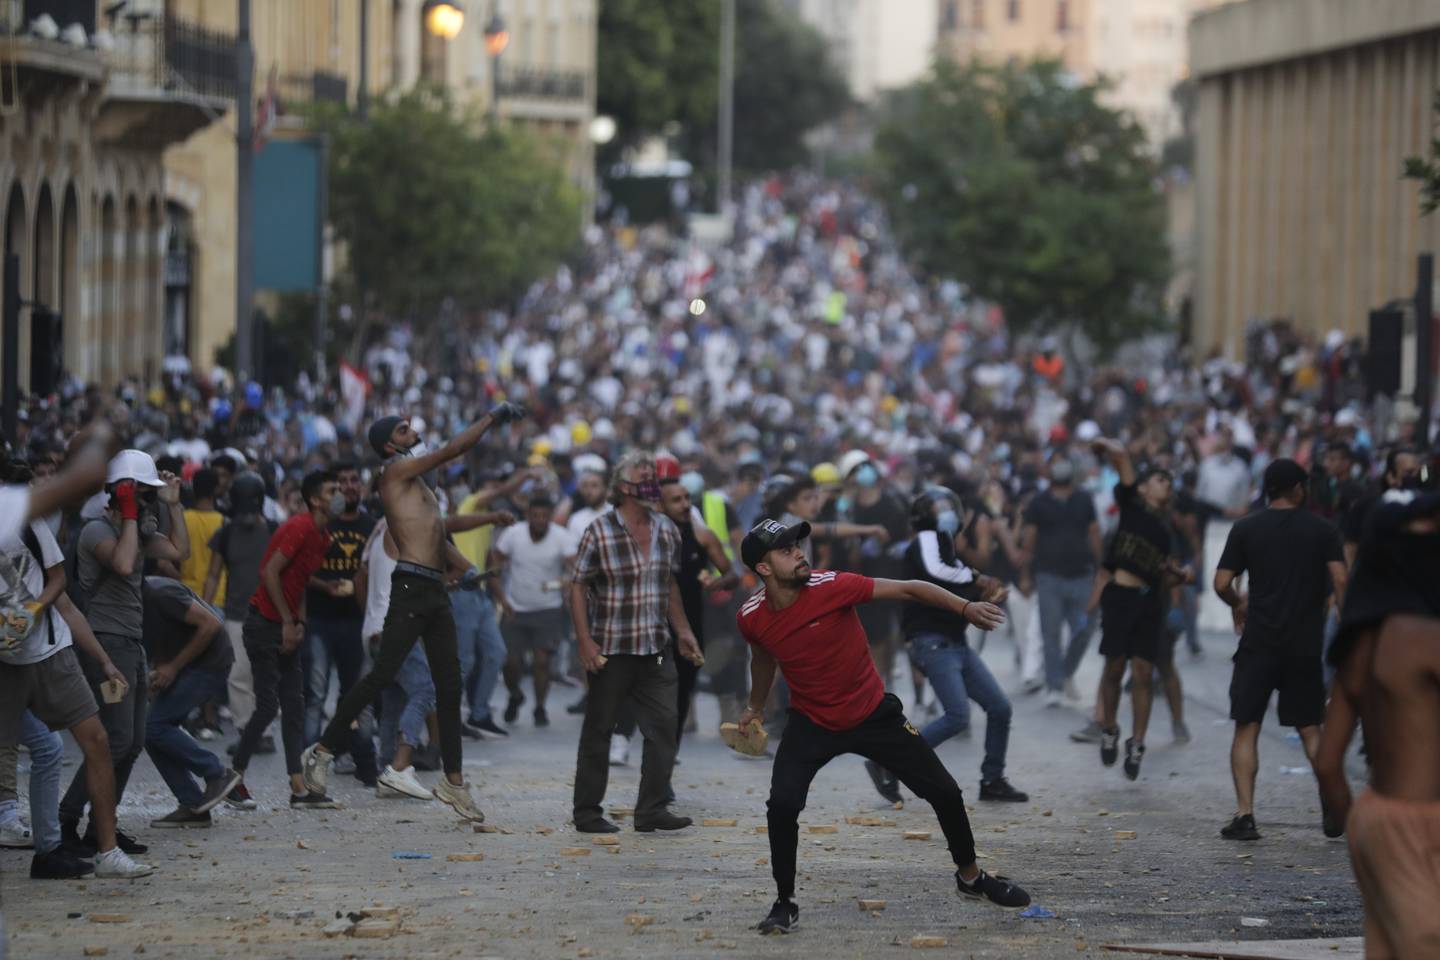 DEMONSTRASJONER: Siden den økonomiske kollapsen i 2019 har Libanon sett gjentatte runder med demonstrasjoner og opprør. Her kaster folk stein under en demonstrasjon mot regjeringen fem dager etter eksplosjonen.